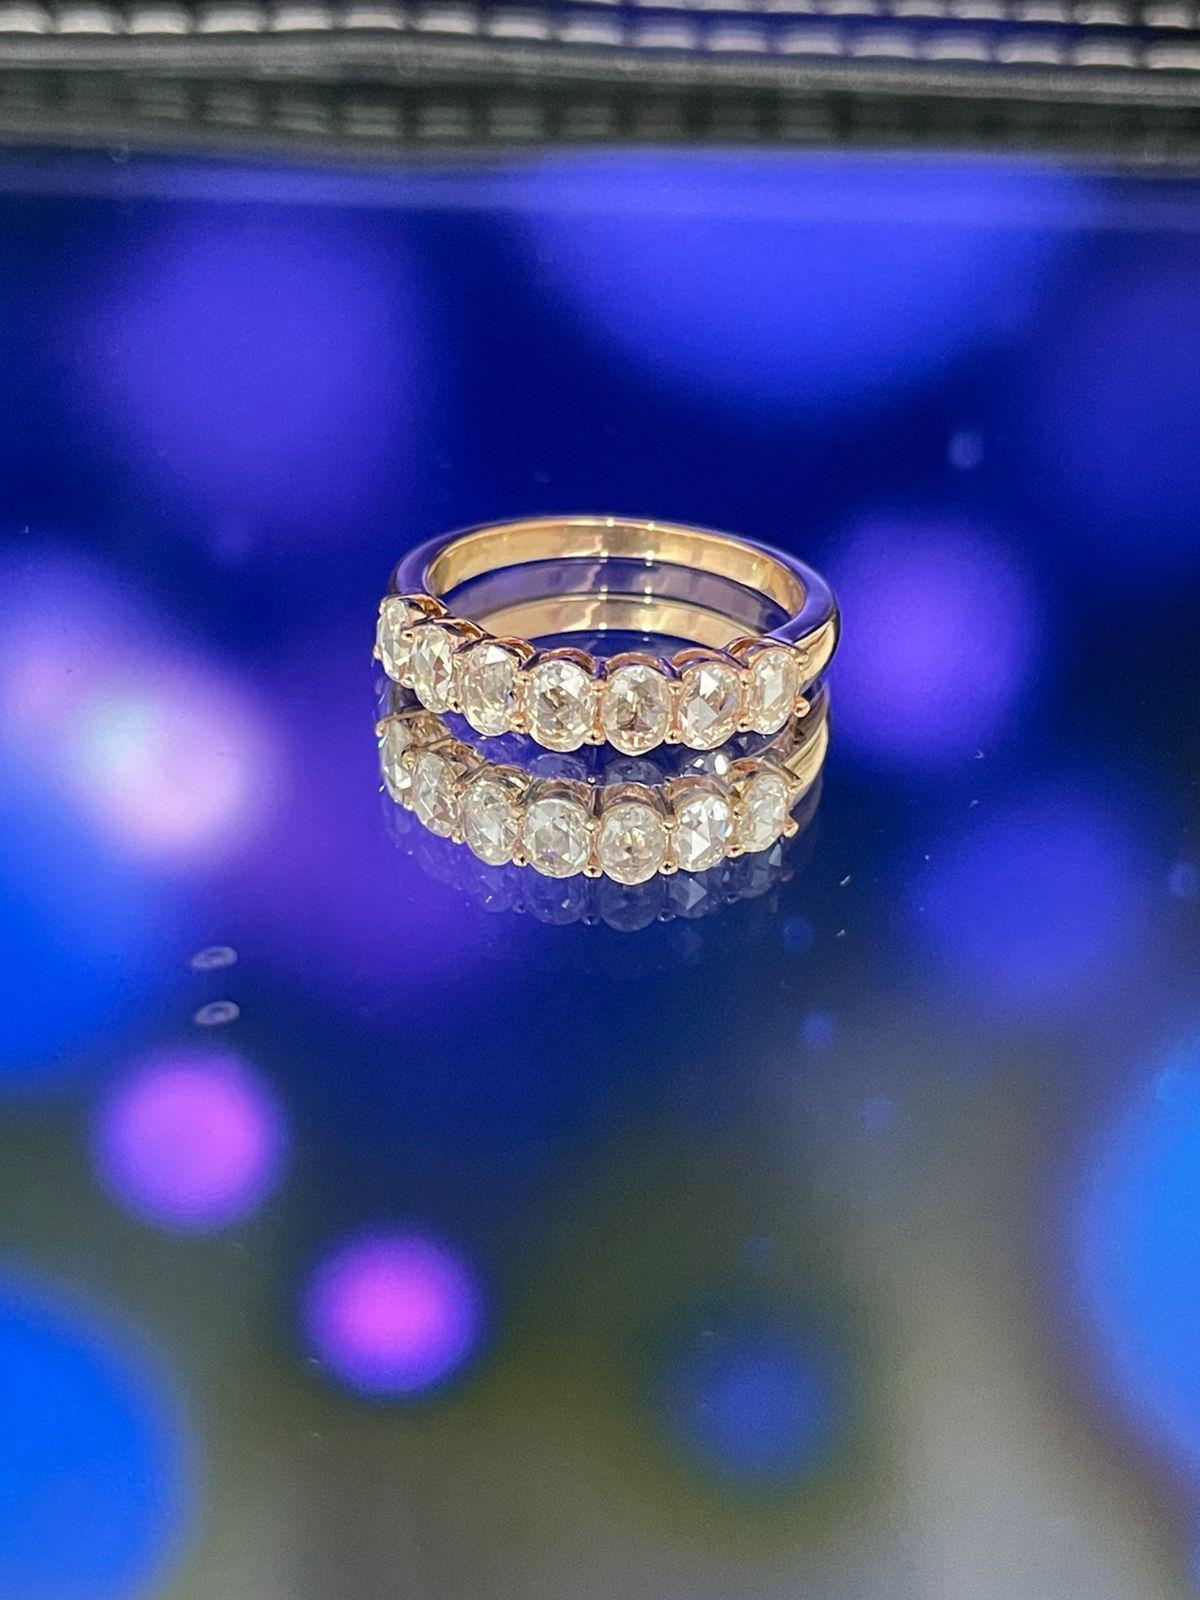 Bague à anneau en diamant PANIM Oval Rosecut en or blanc / or rose 18 carats

Une bague de fiançailles classique.

Style disponible dans différentes gammes de prix. Les prix sont fonction de votre sélection. Veuillez nous contacter pour plus